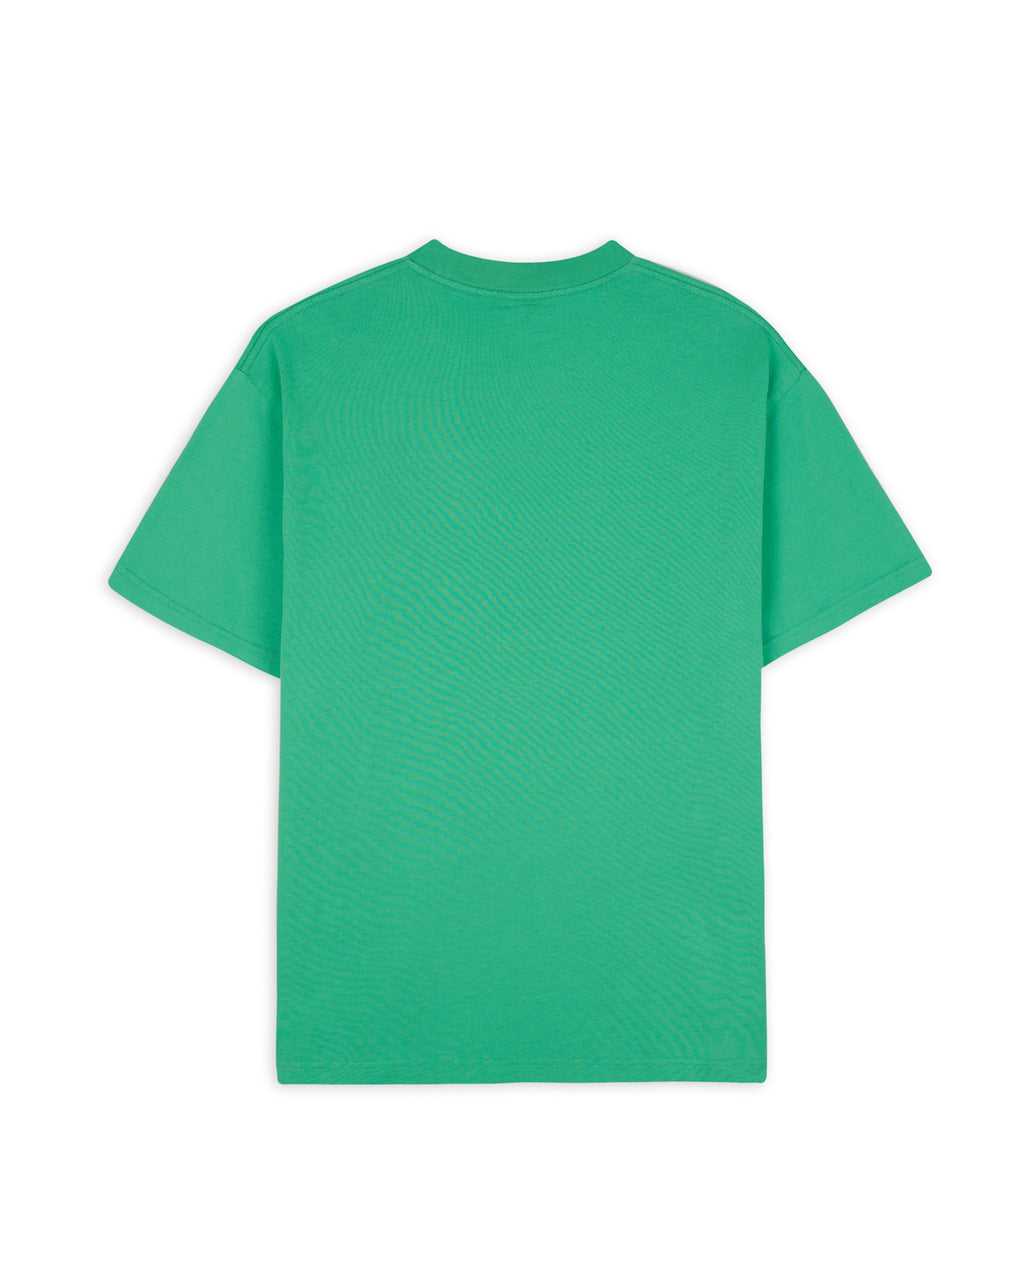 Balloon Man T-Shirt- Green 2